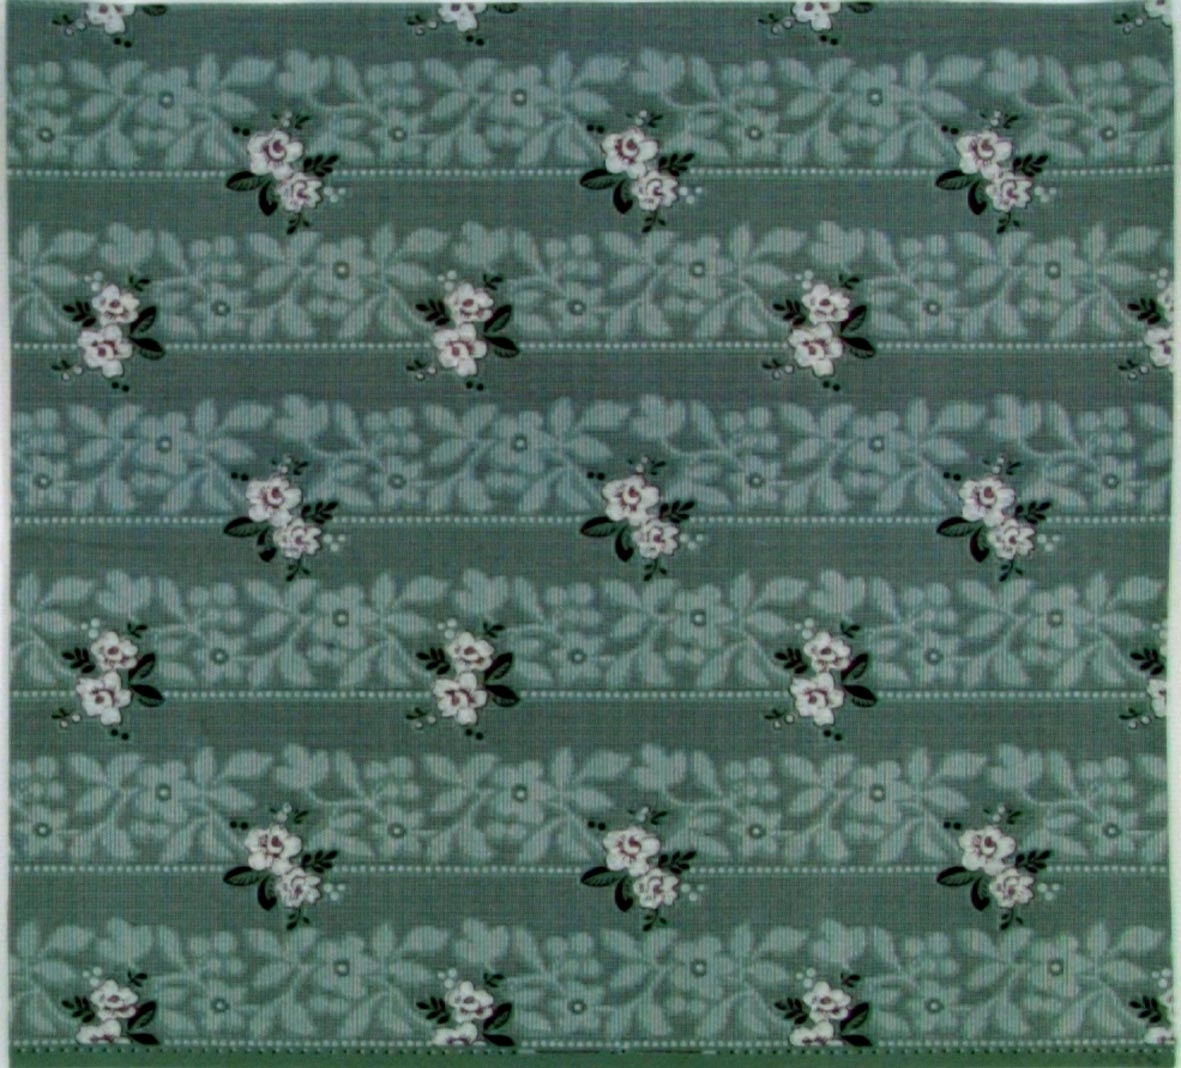 Liten stiliserad par-ros i diagonalupprepning över vertikalt randmönster med bla blomrankor
sgrafferade i vitt. Tryck i vitt och vinrött på grågrönt genomfärgat papper. Bakgrunden delvis dekorerad med rutmönster.